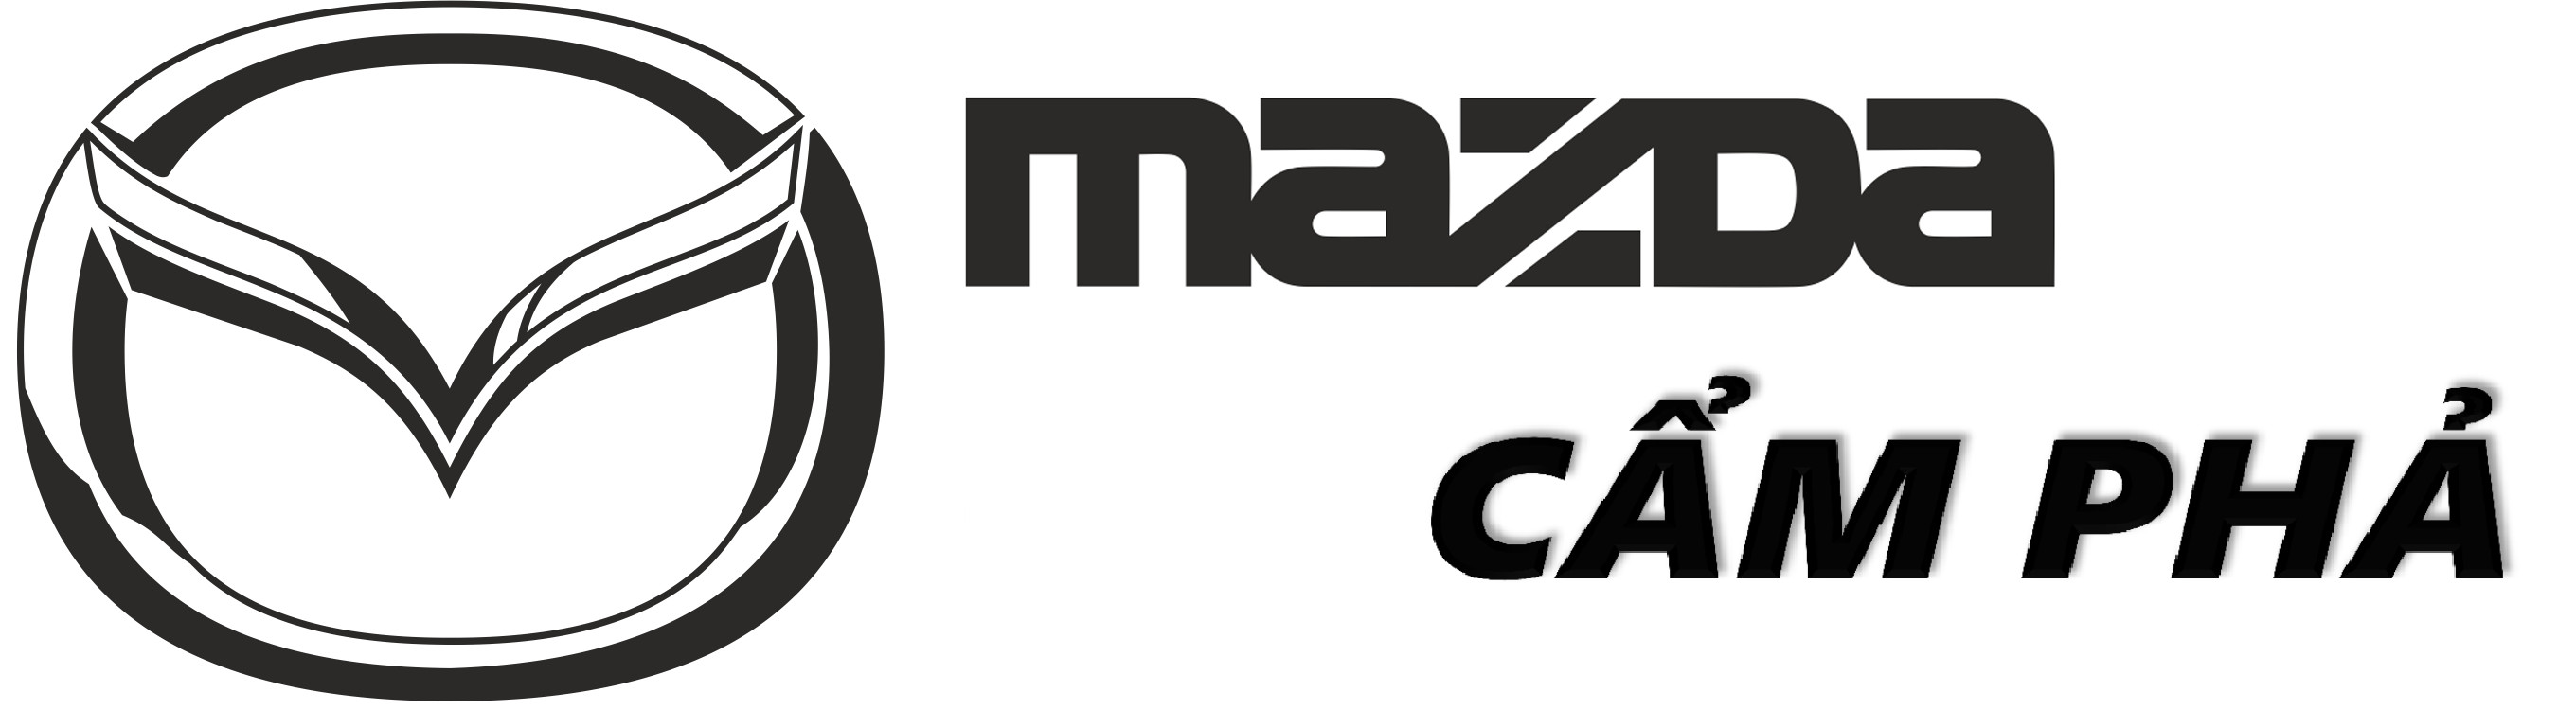 Mazda Cẩm Phả (Mazda Cẩm Phả): Đón xem chiếc xe Mazda đầy phong cách này trong hình ảnh mới nhất của chúng tôi. Với sự hoàn hảo từ mọi góc độ và các tính năng hiện đại, chiếc xe này sẽ mang đến chuyến đi đáng nhớ cho bạn.